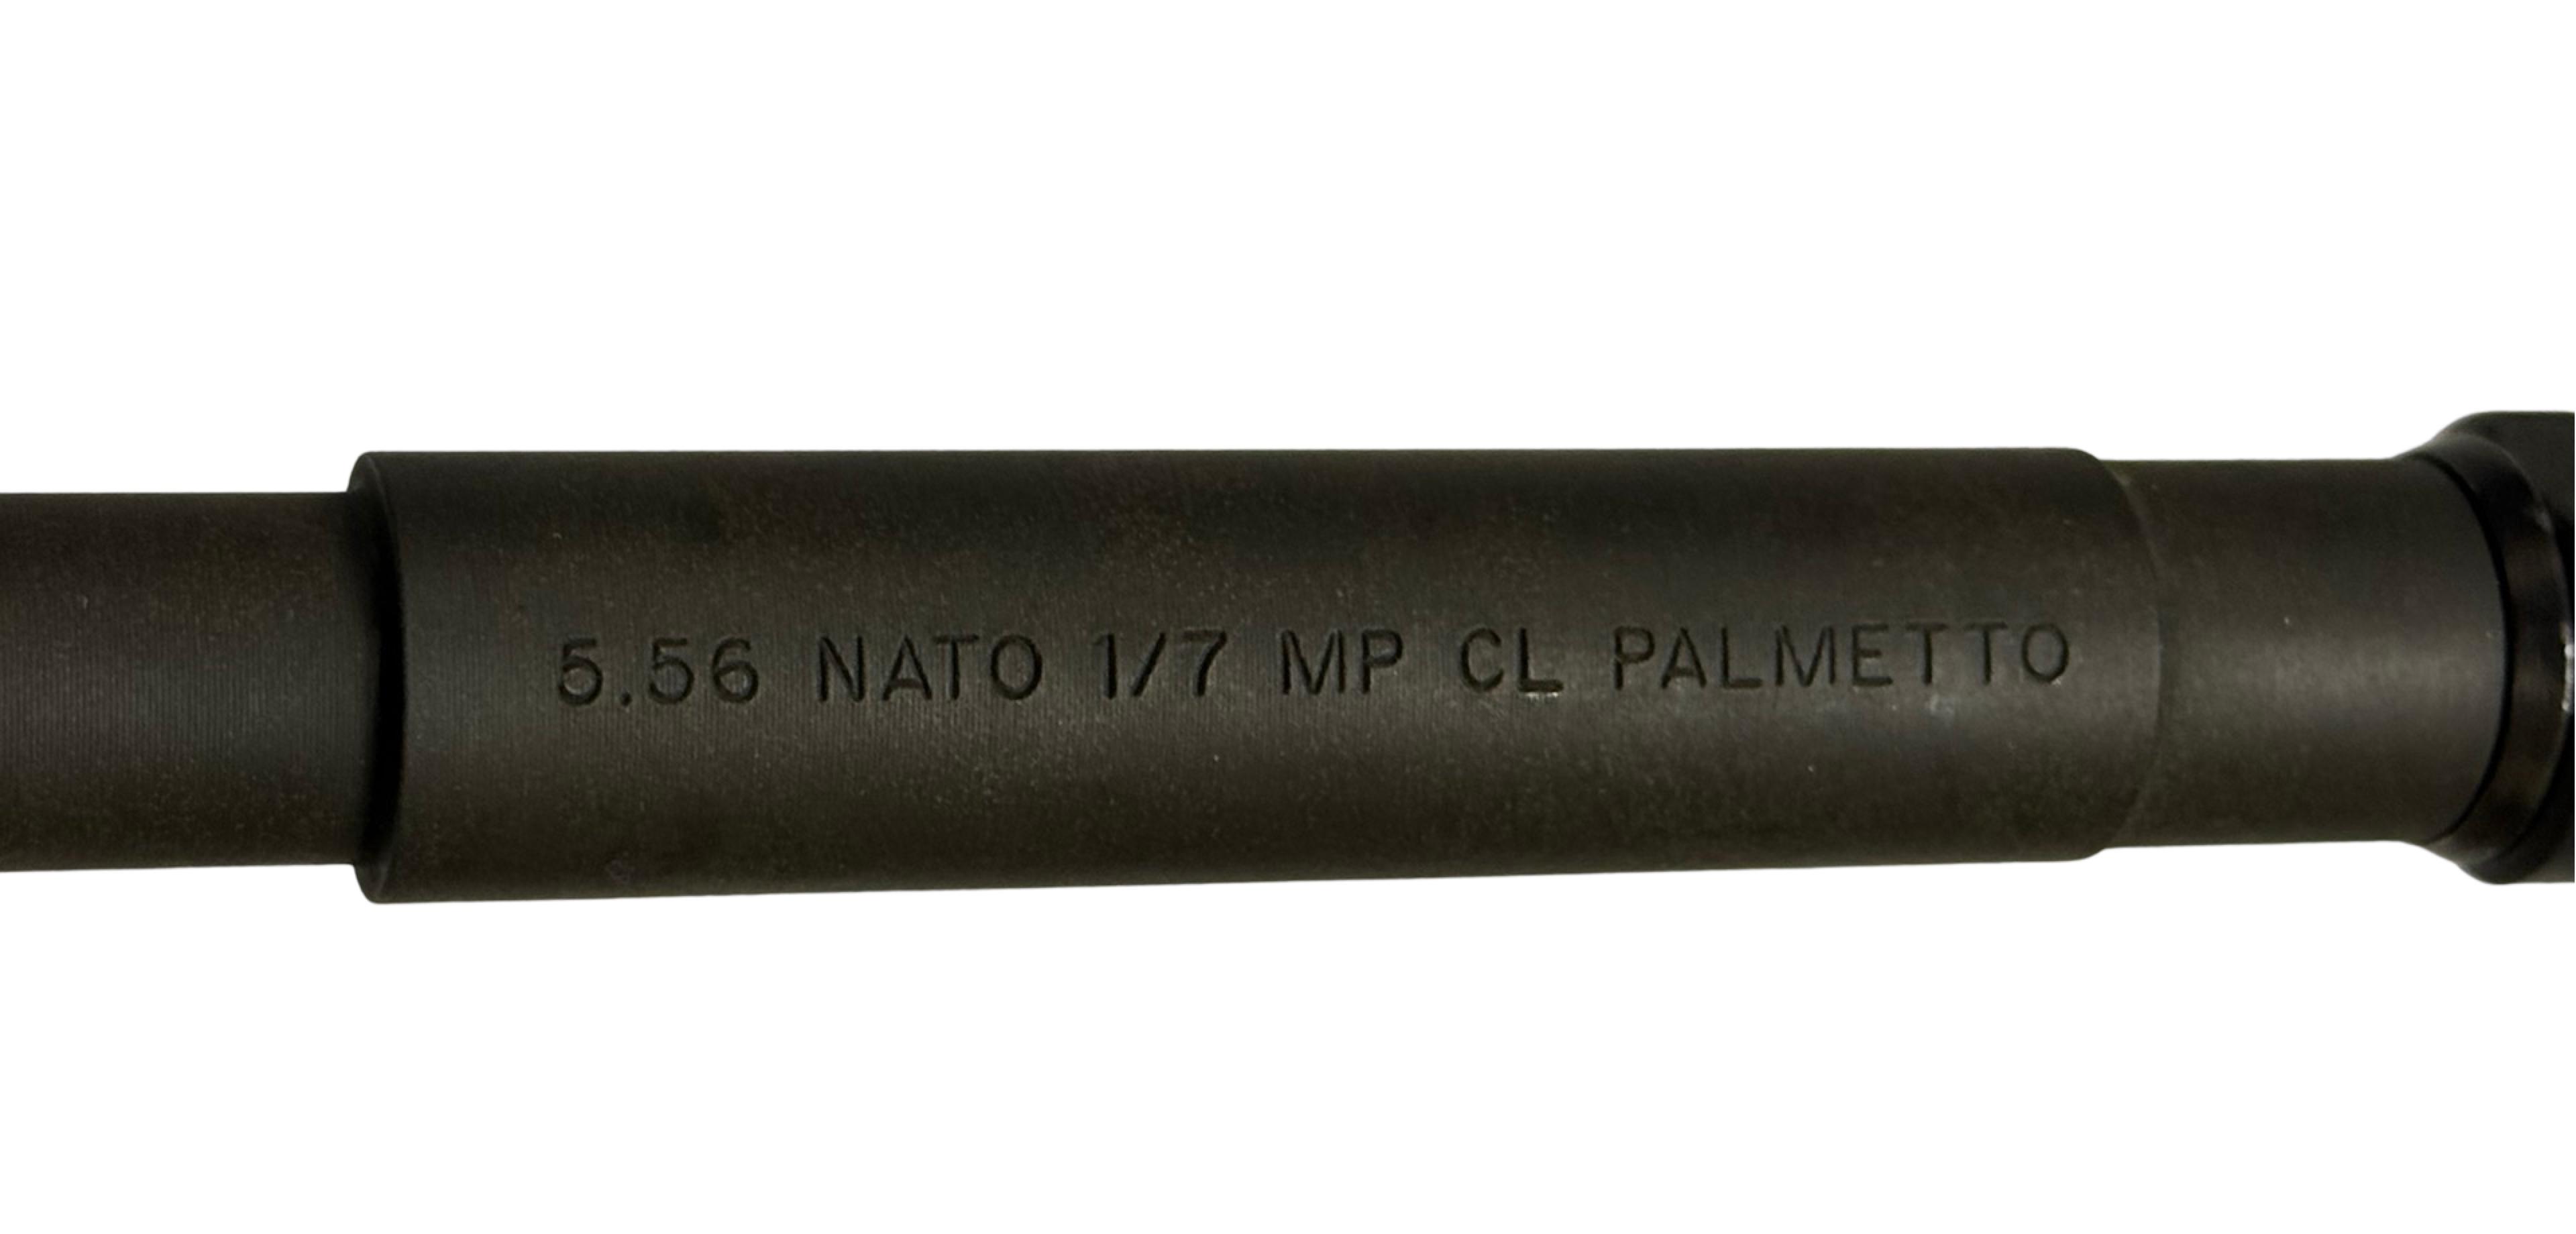 Excellent Palmetto State Armory PA-15 5.56mm NATO Semi-Automatic M4 Carbine